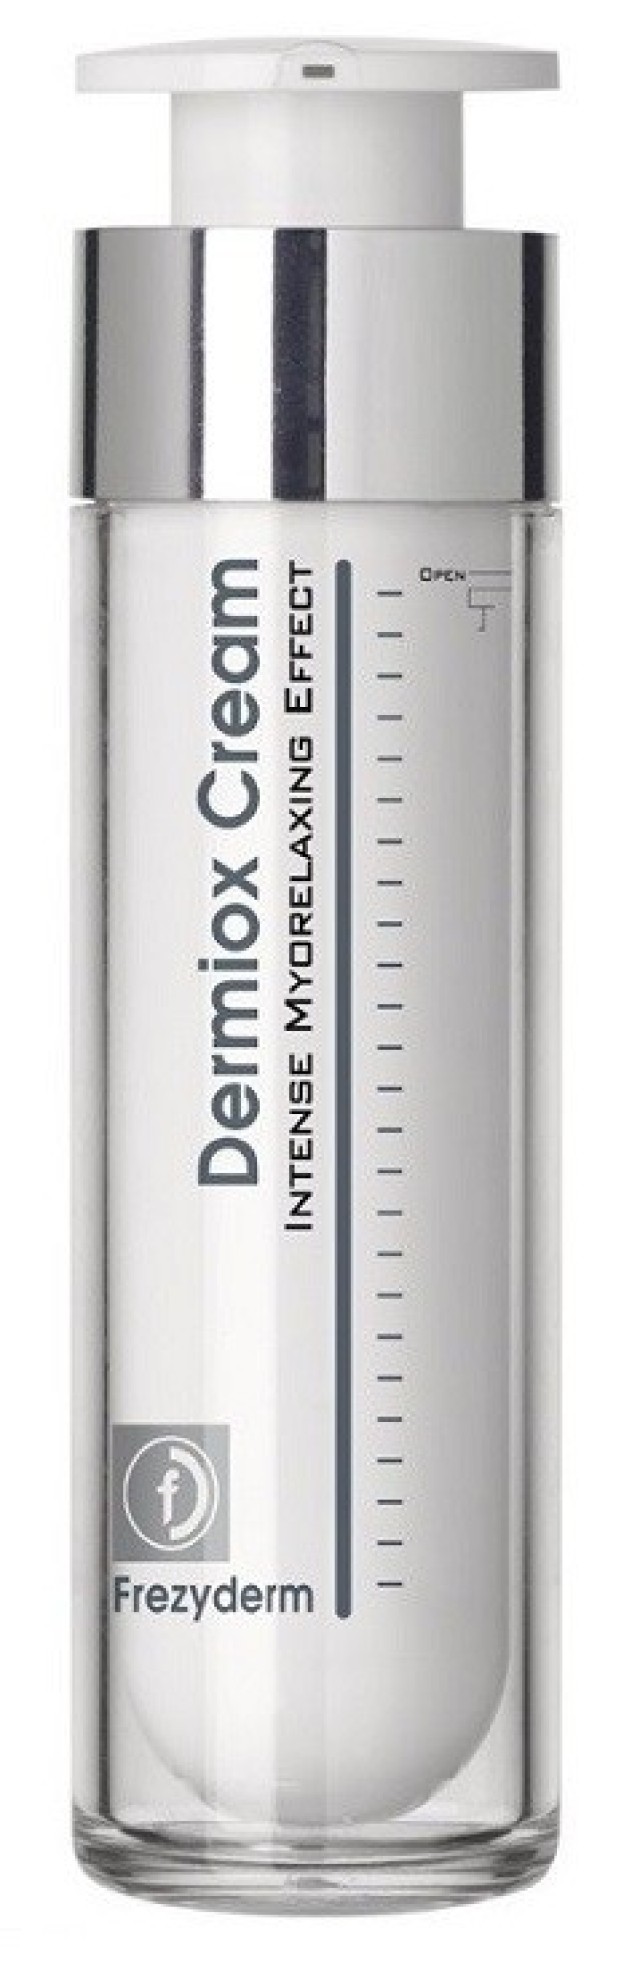 FrezyDerm Dermiox Cream Κρέμα Κατά των Ρυτίδων Έκφρασης 50ml